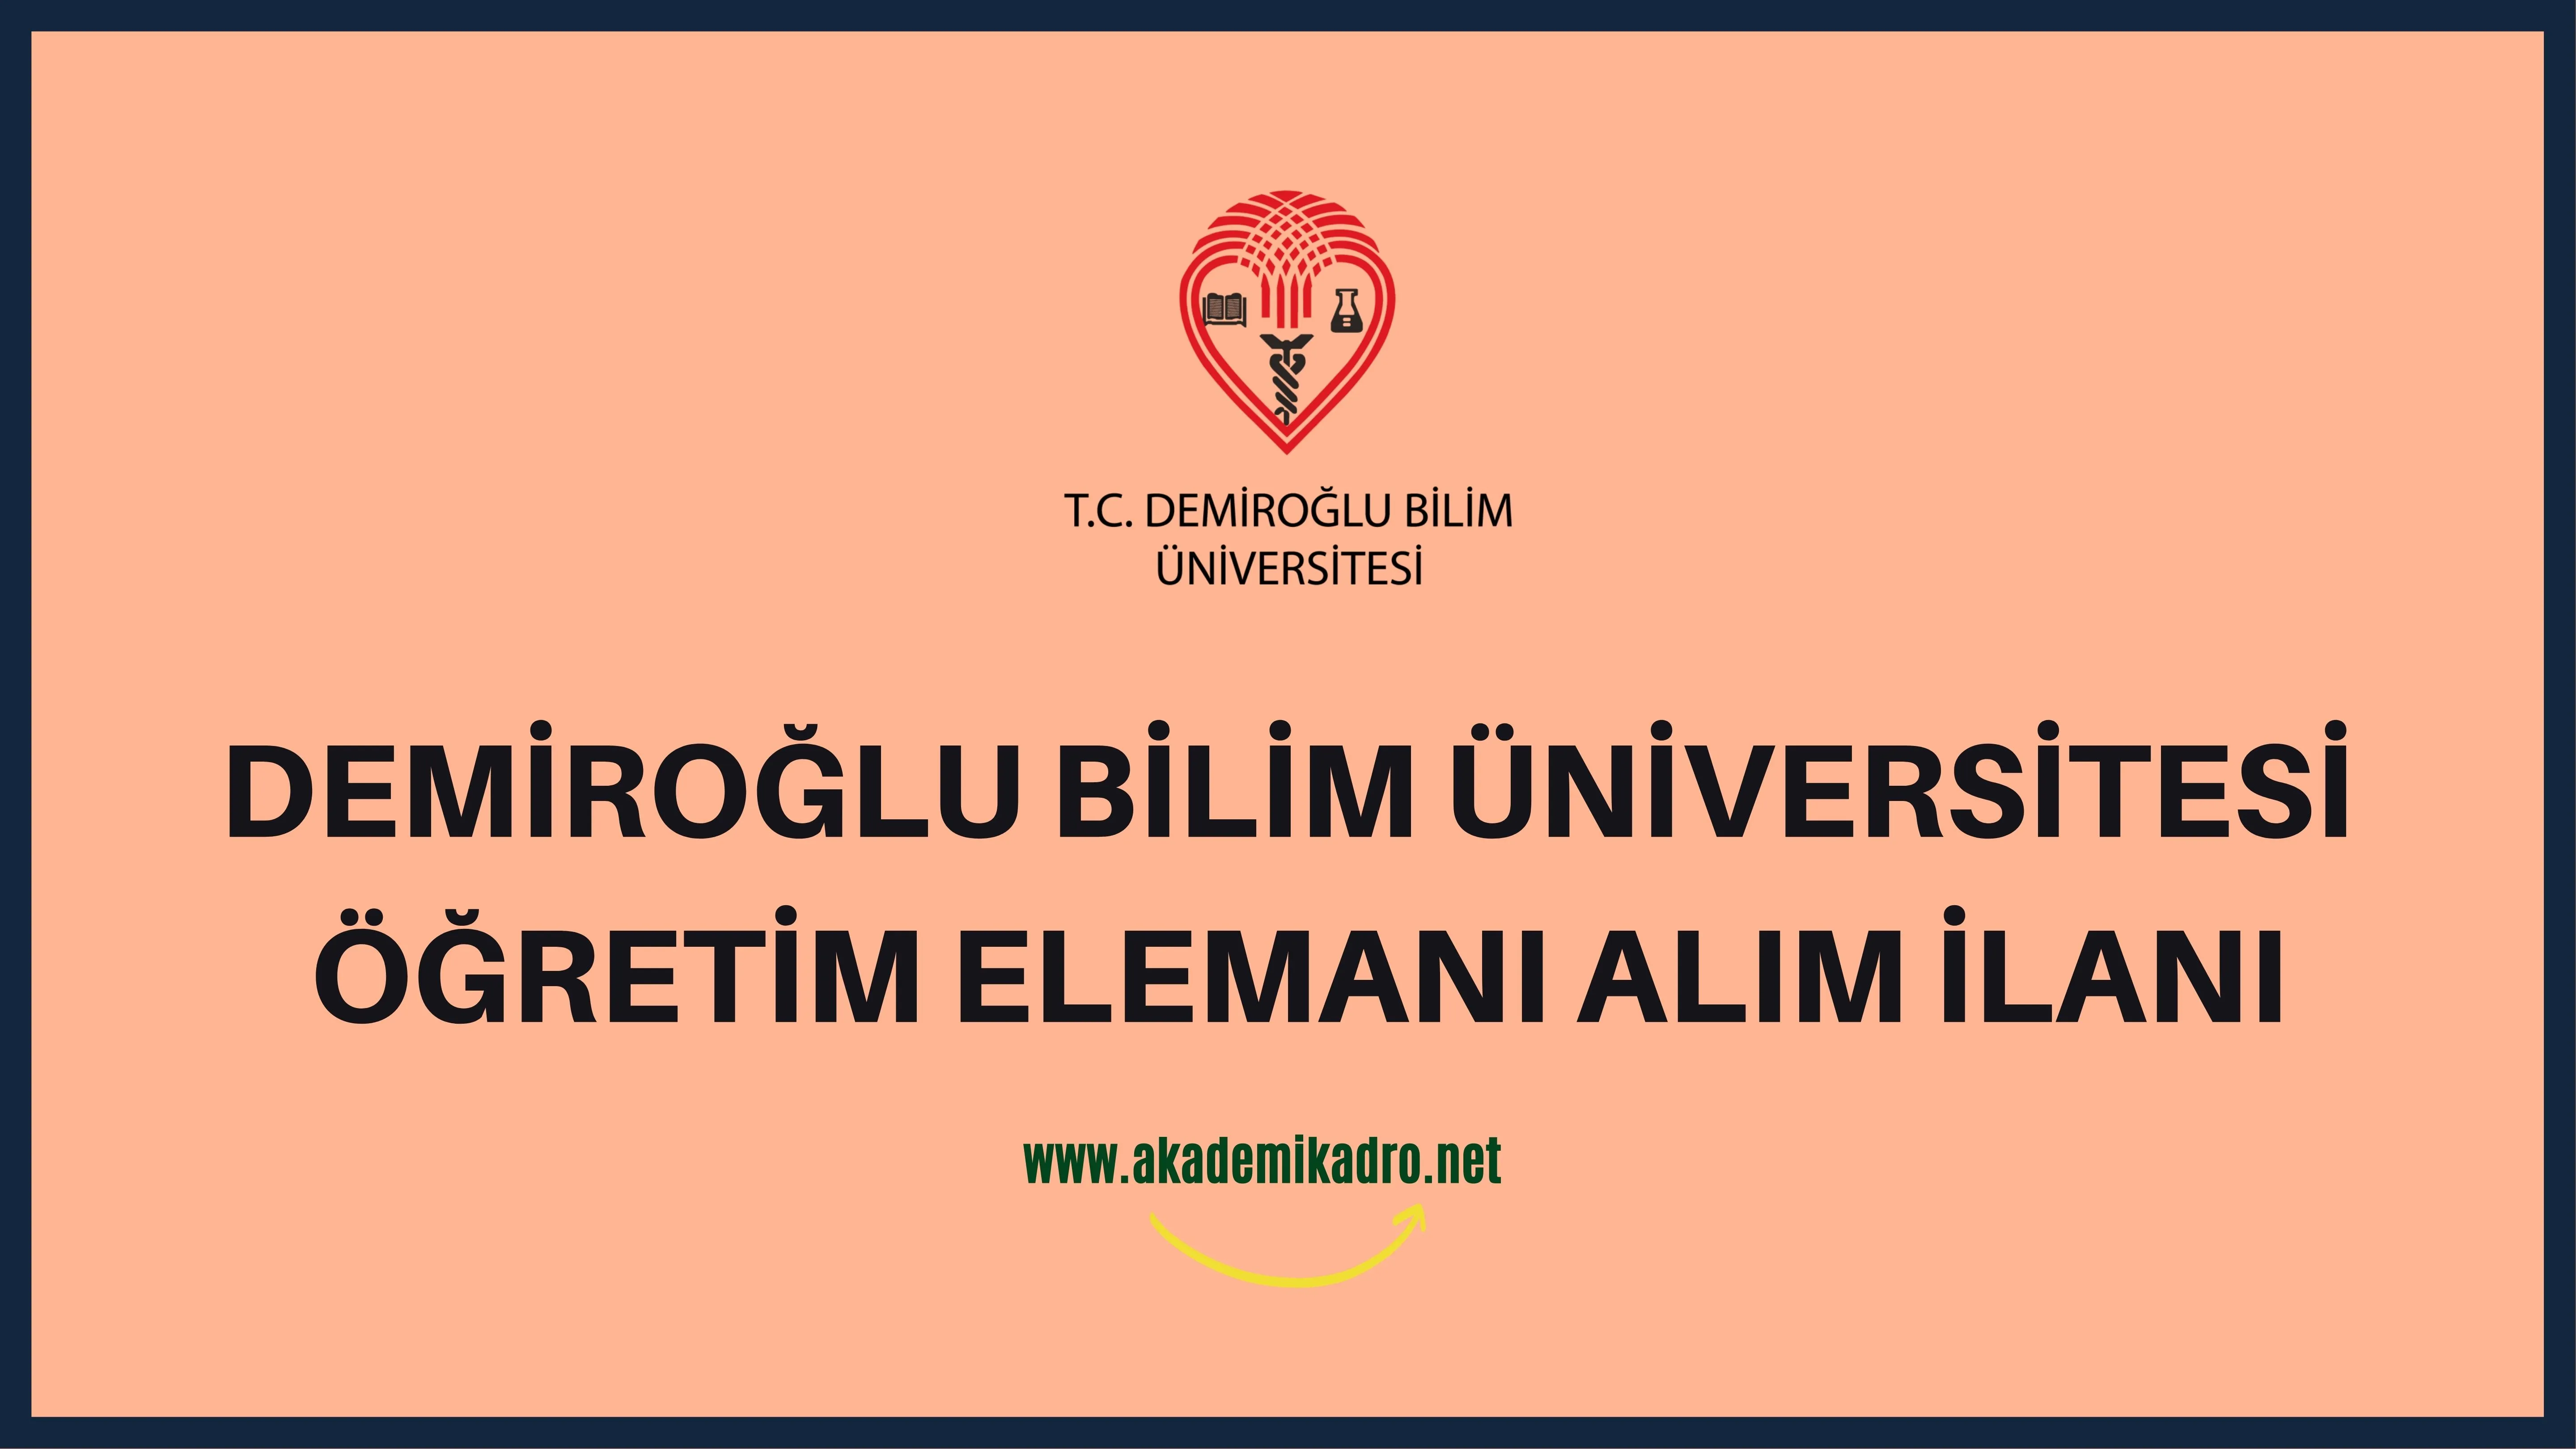 Demiroğlu Bilim Üniversitesi 2 Öğretim görevlisi, 4 Araştırma görevlisi ve 6 Öğretim üyesi alacak.